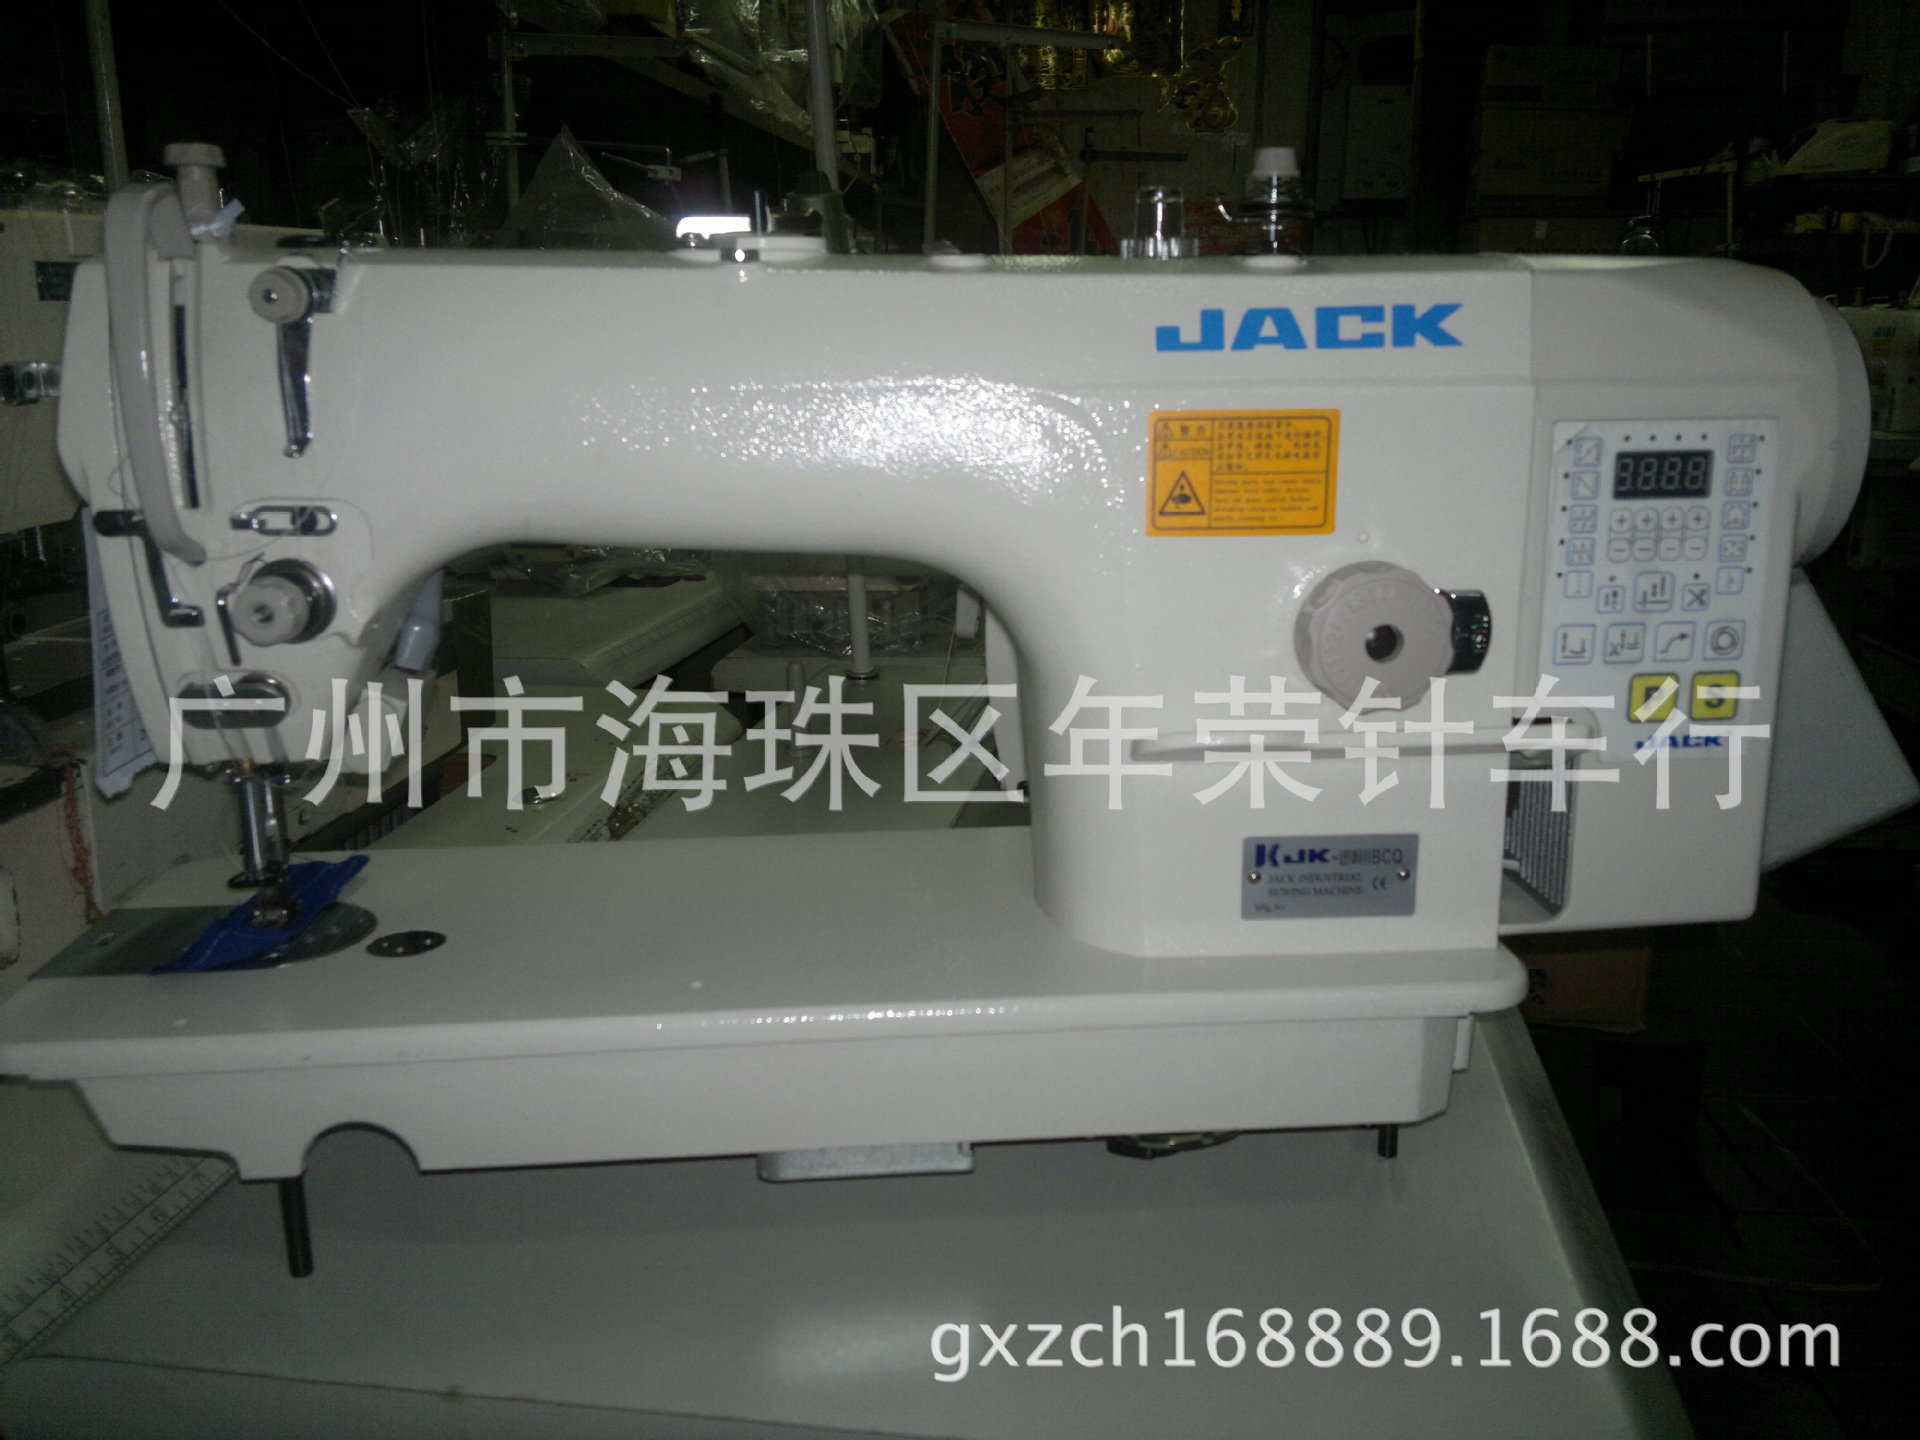 【厂家直销】杰克迅利ii一体直驱电脑平缝机 缝纫机 工业缝纫机